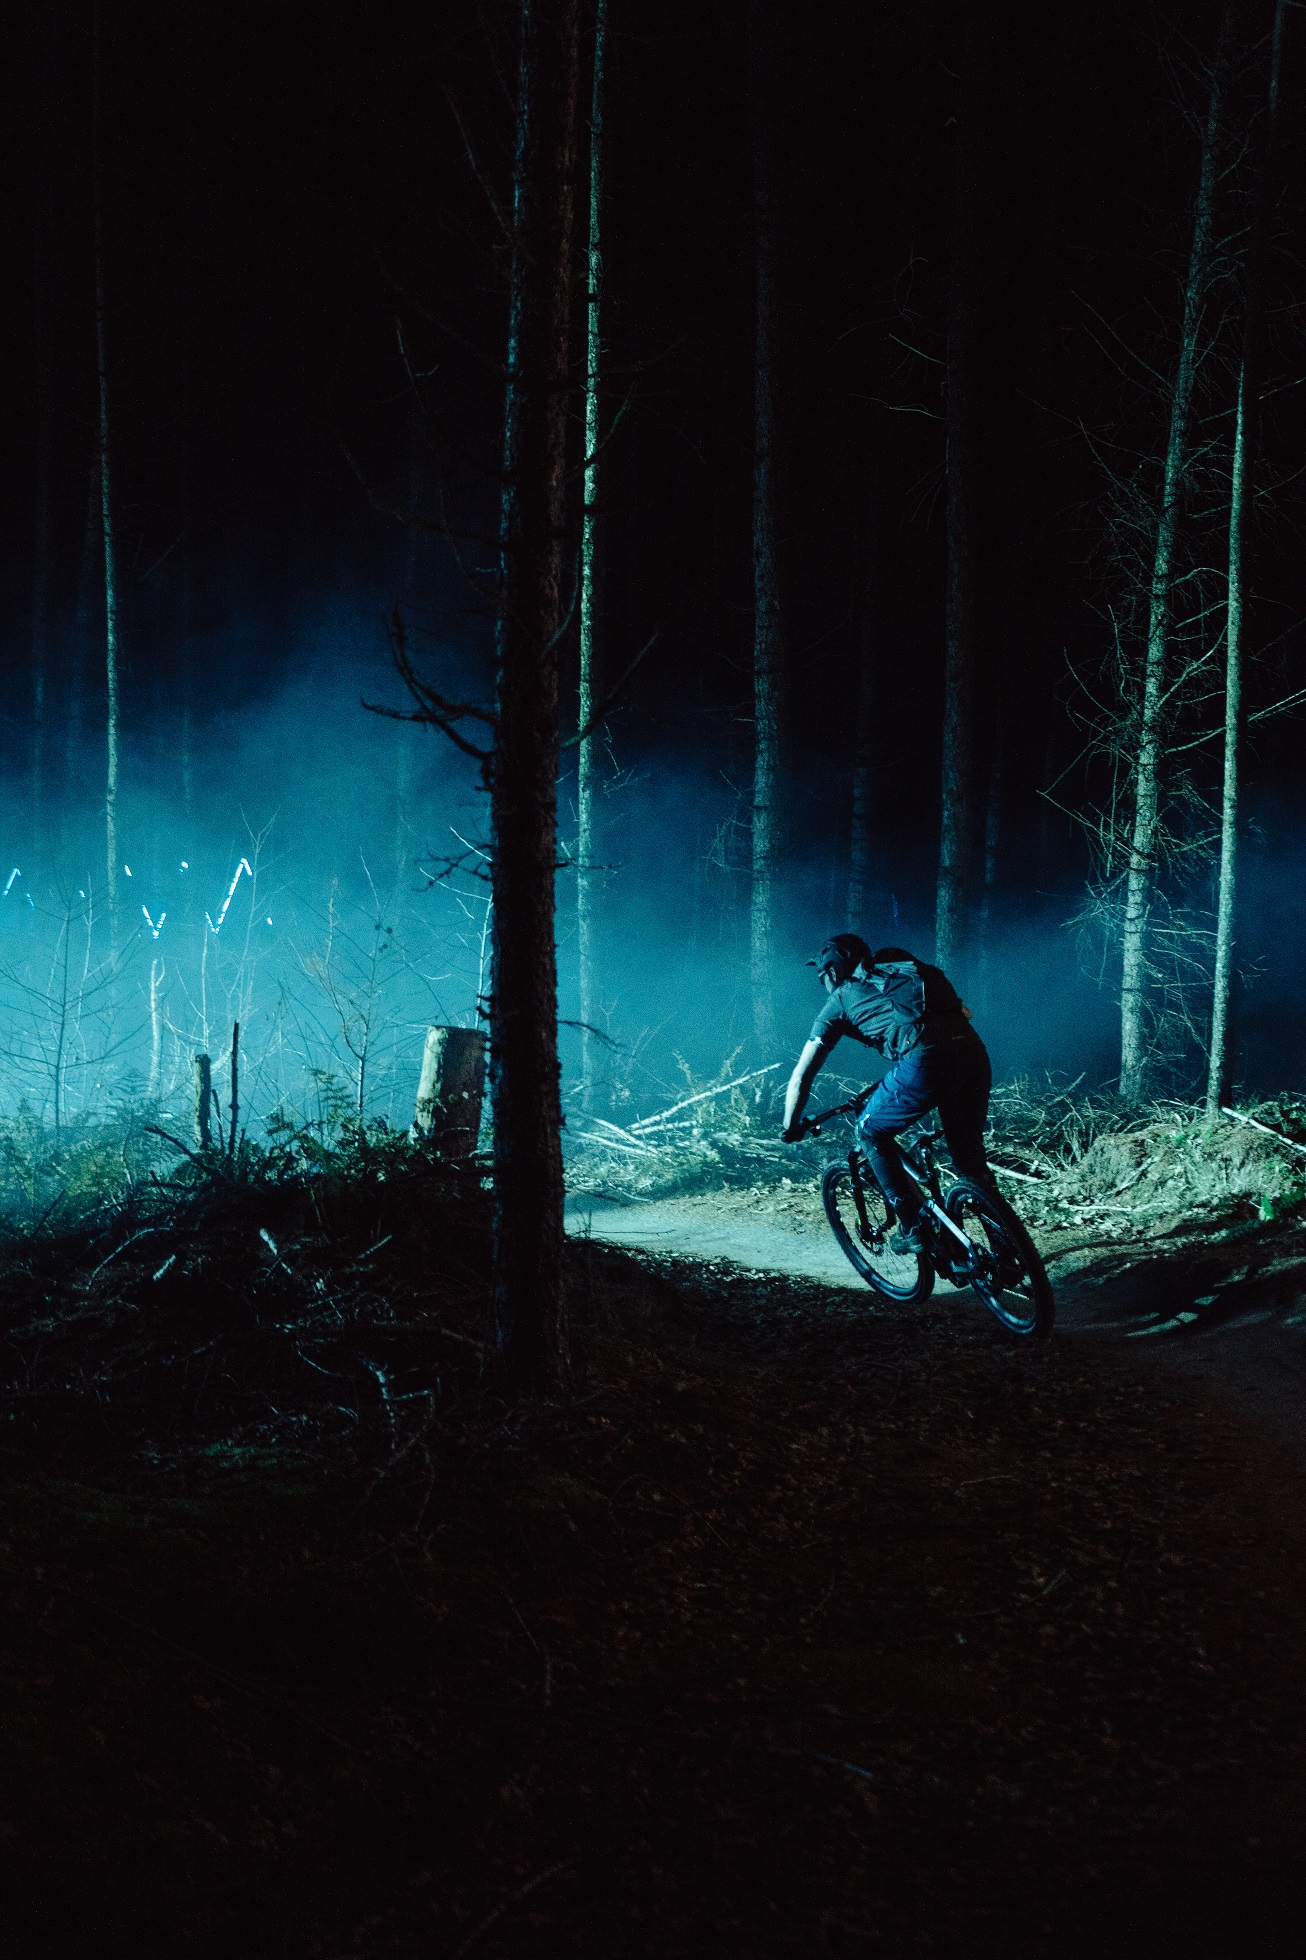 Sagoma di un uomo in sella alla sua mountain bike in una foresta oscura con luci blu sullo sfondo